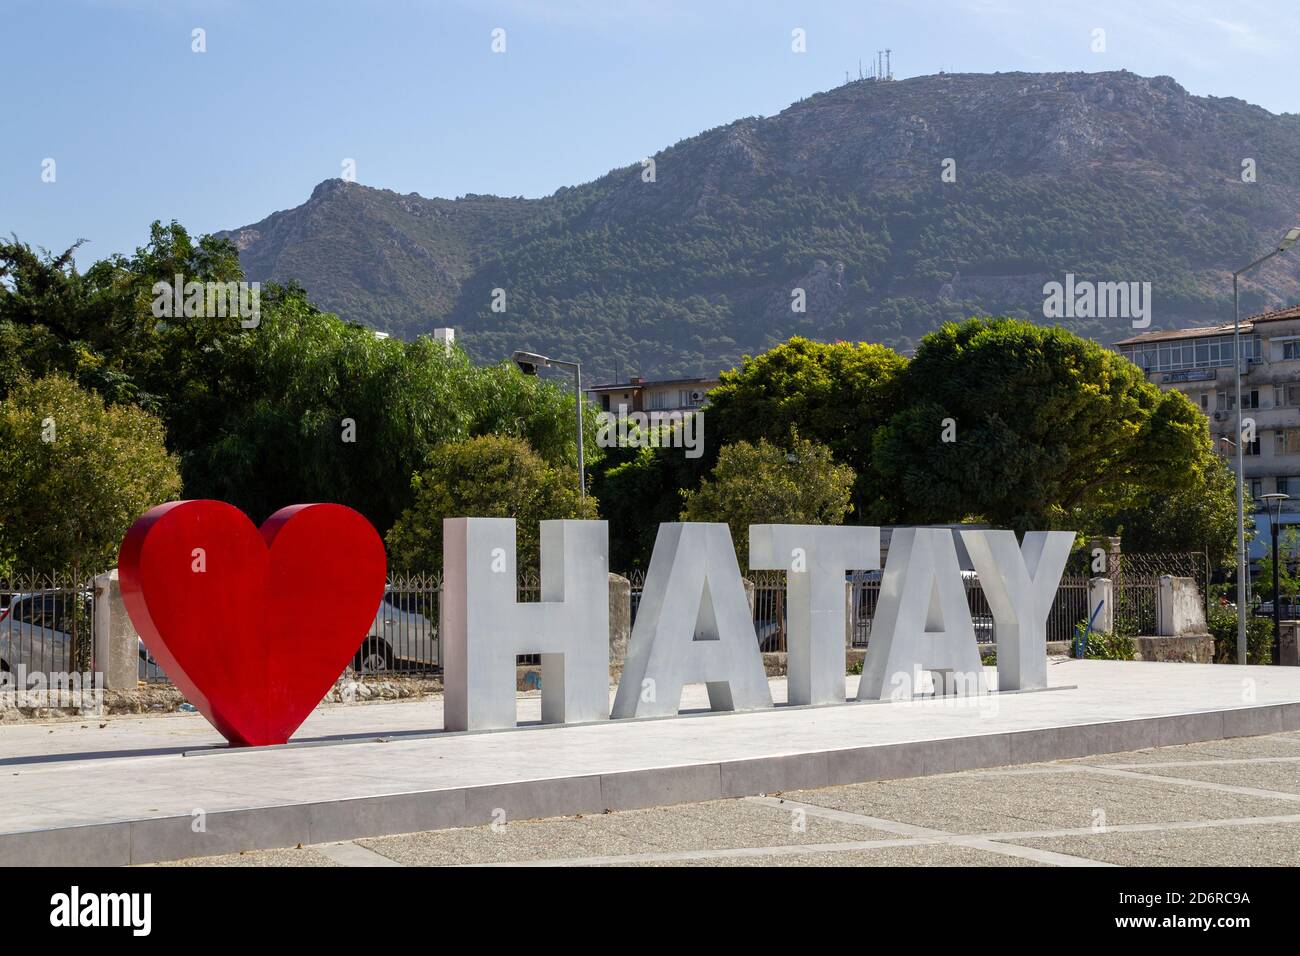 Antakya, Hatay / Turkey - October 09 2020: Hatay city center touristic sign Stock Photo